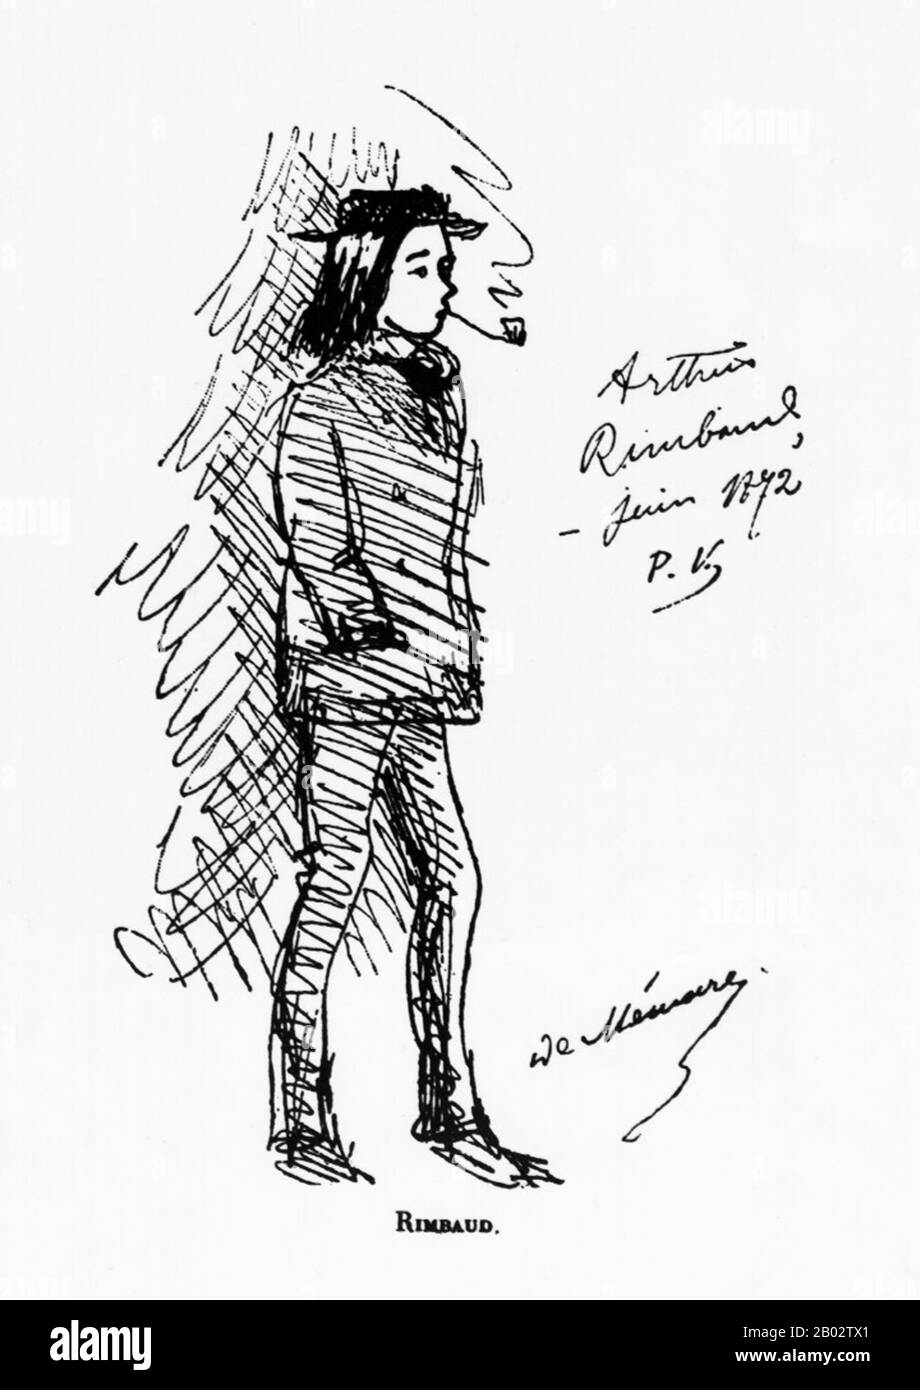 Jean Nicolas Arthur Rimbaud (* 20. Oktober 1854 in Charleville, Ardennes; † 10. November 1891) war ein französischer Dichter. Er prägte die moderne Literatur und Kunst, inspirierte verschiedene Musiker und präfigurierte den Surrealismus. Er begann schon in jungen Jahren mit dem Schreiben von Gedichten, während er noch in der Grundschule war, und hielt vollständig an, bevor er 21 wurde. Er war in seinen Teenagern meist kreativ. Rimbaud war bekannt, dass er ein Libertine war und eine unruhige Seele war. Kurz nach seinem siebenunddreißigsten Geburtstag reiste er vor seinem Tod an Krebs ausgiebig auf drei Kontinenten. Stockfoto